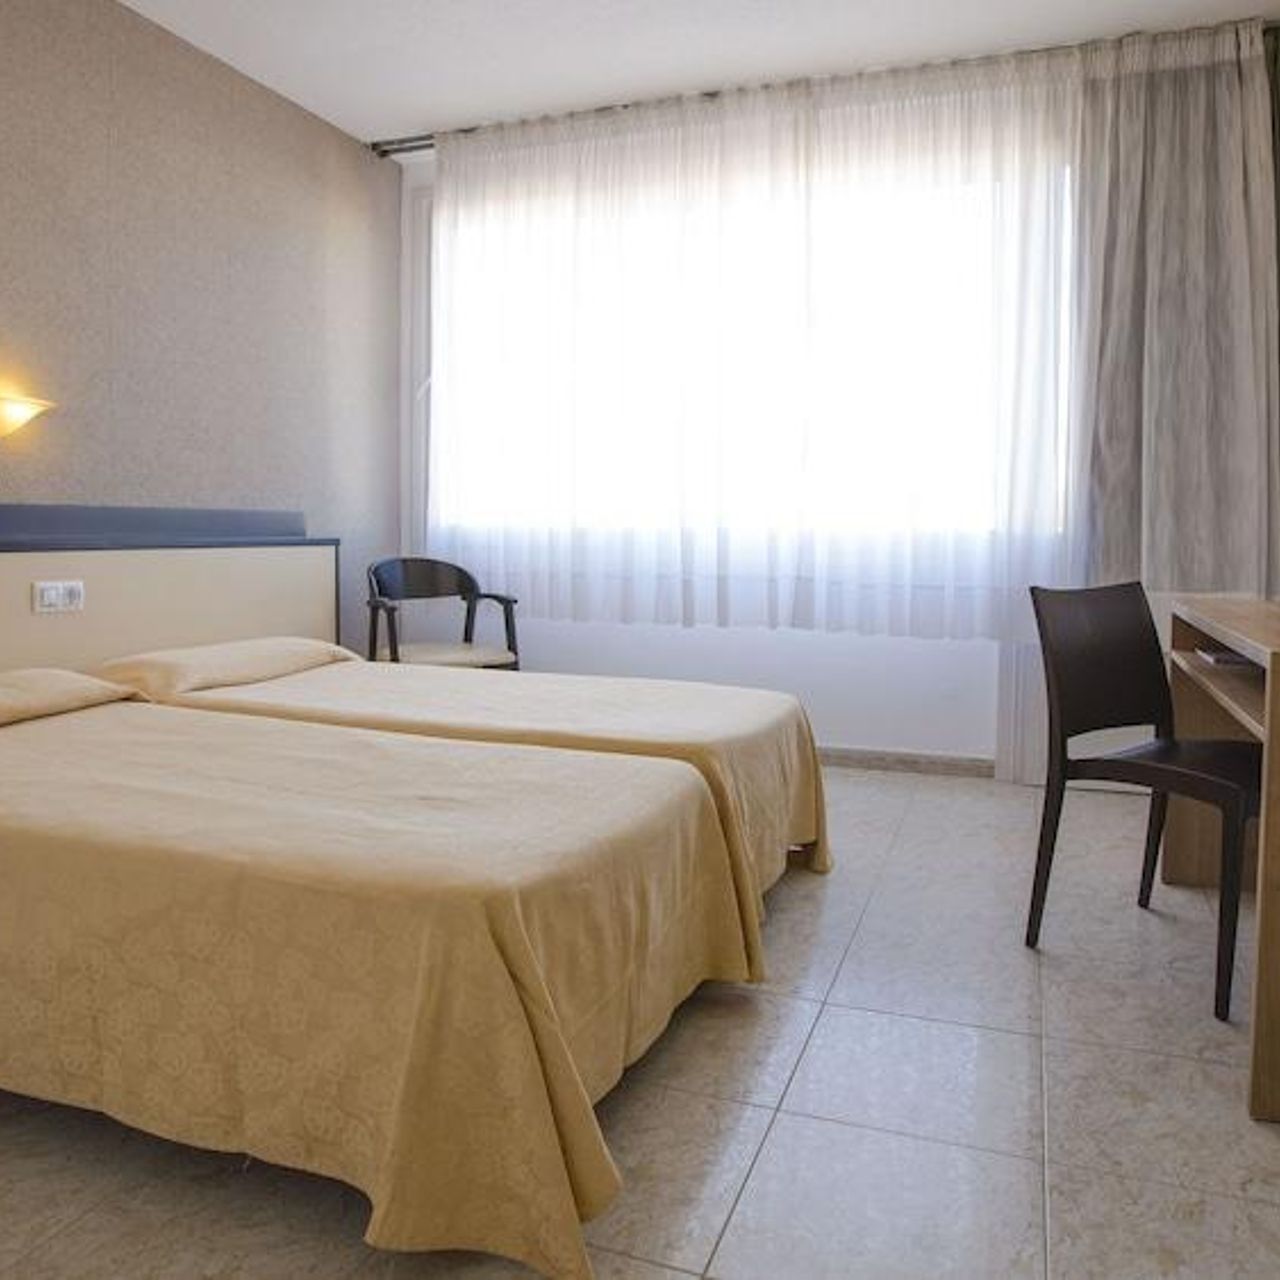 Hotel Santa Rosa - Lloret de Mar - Great prices at HOTEL INFO